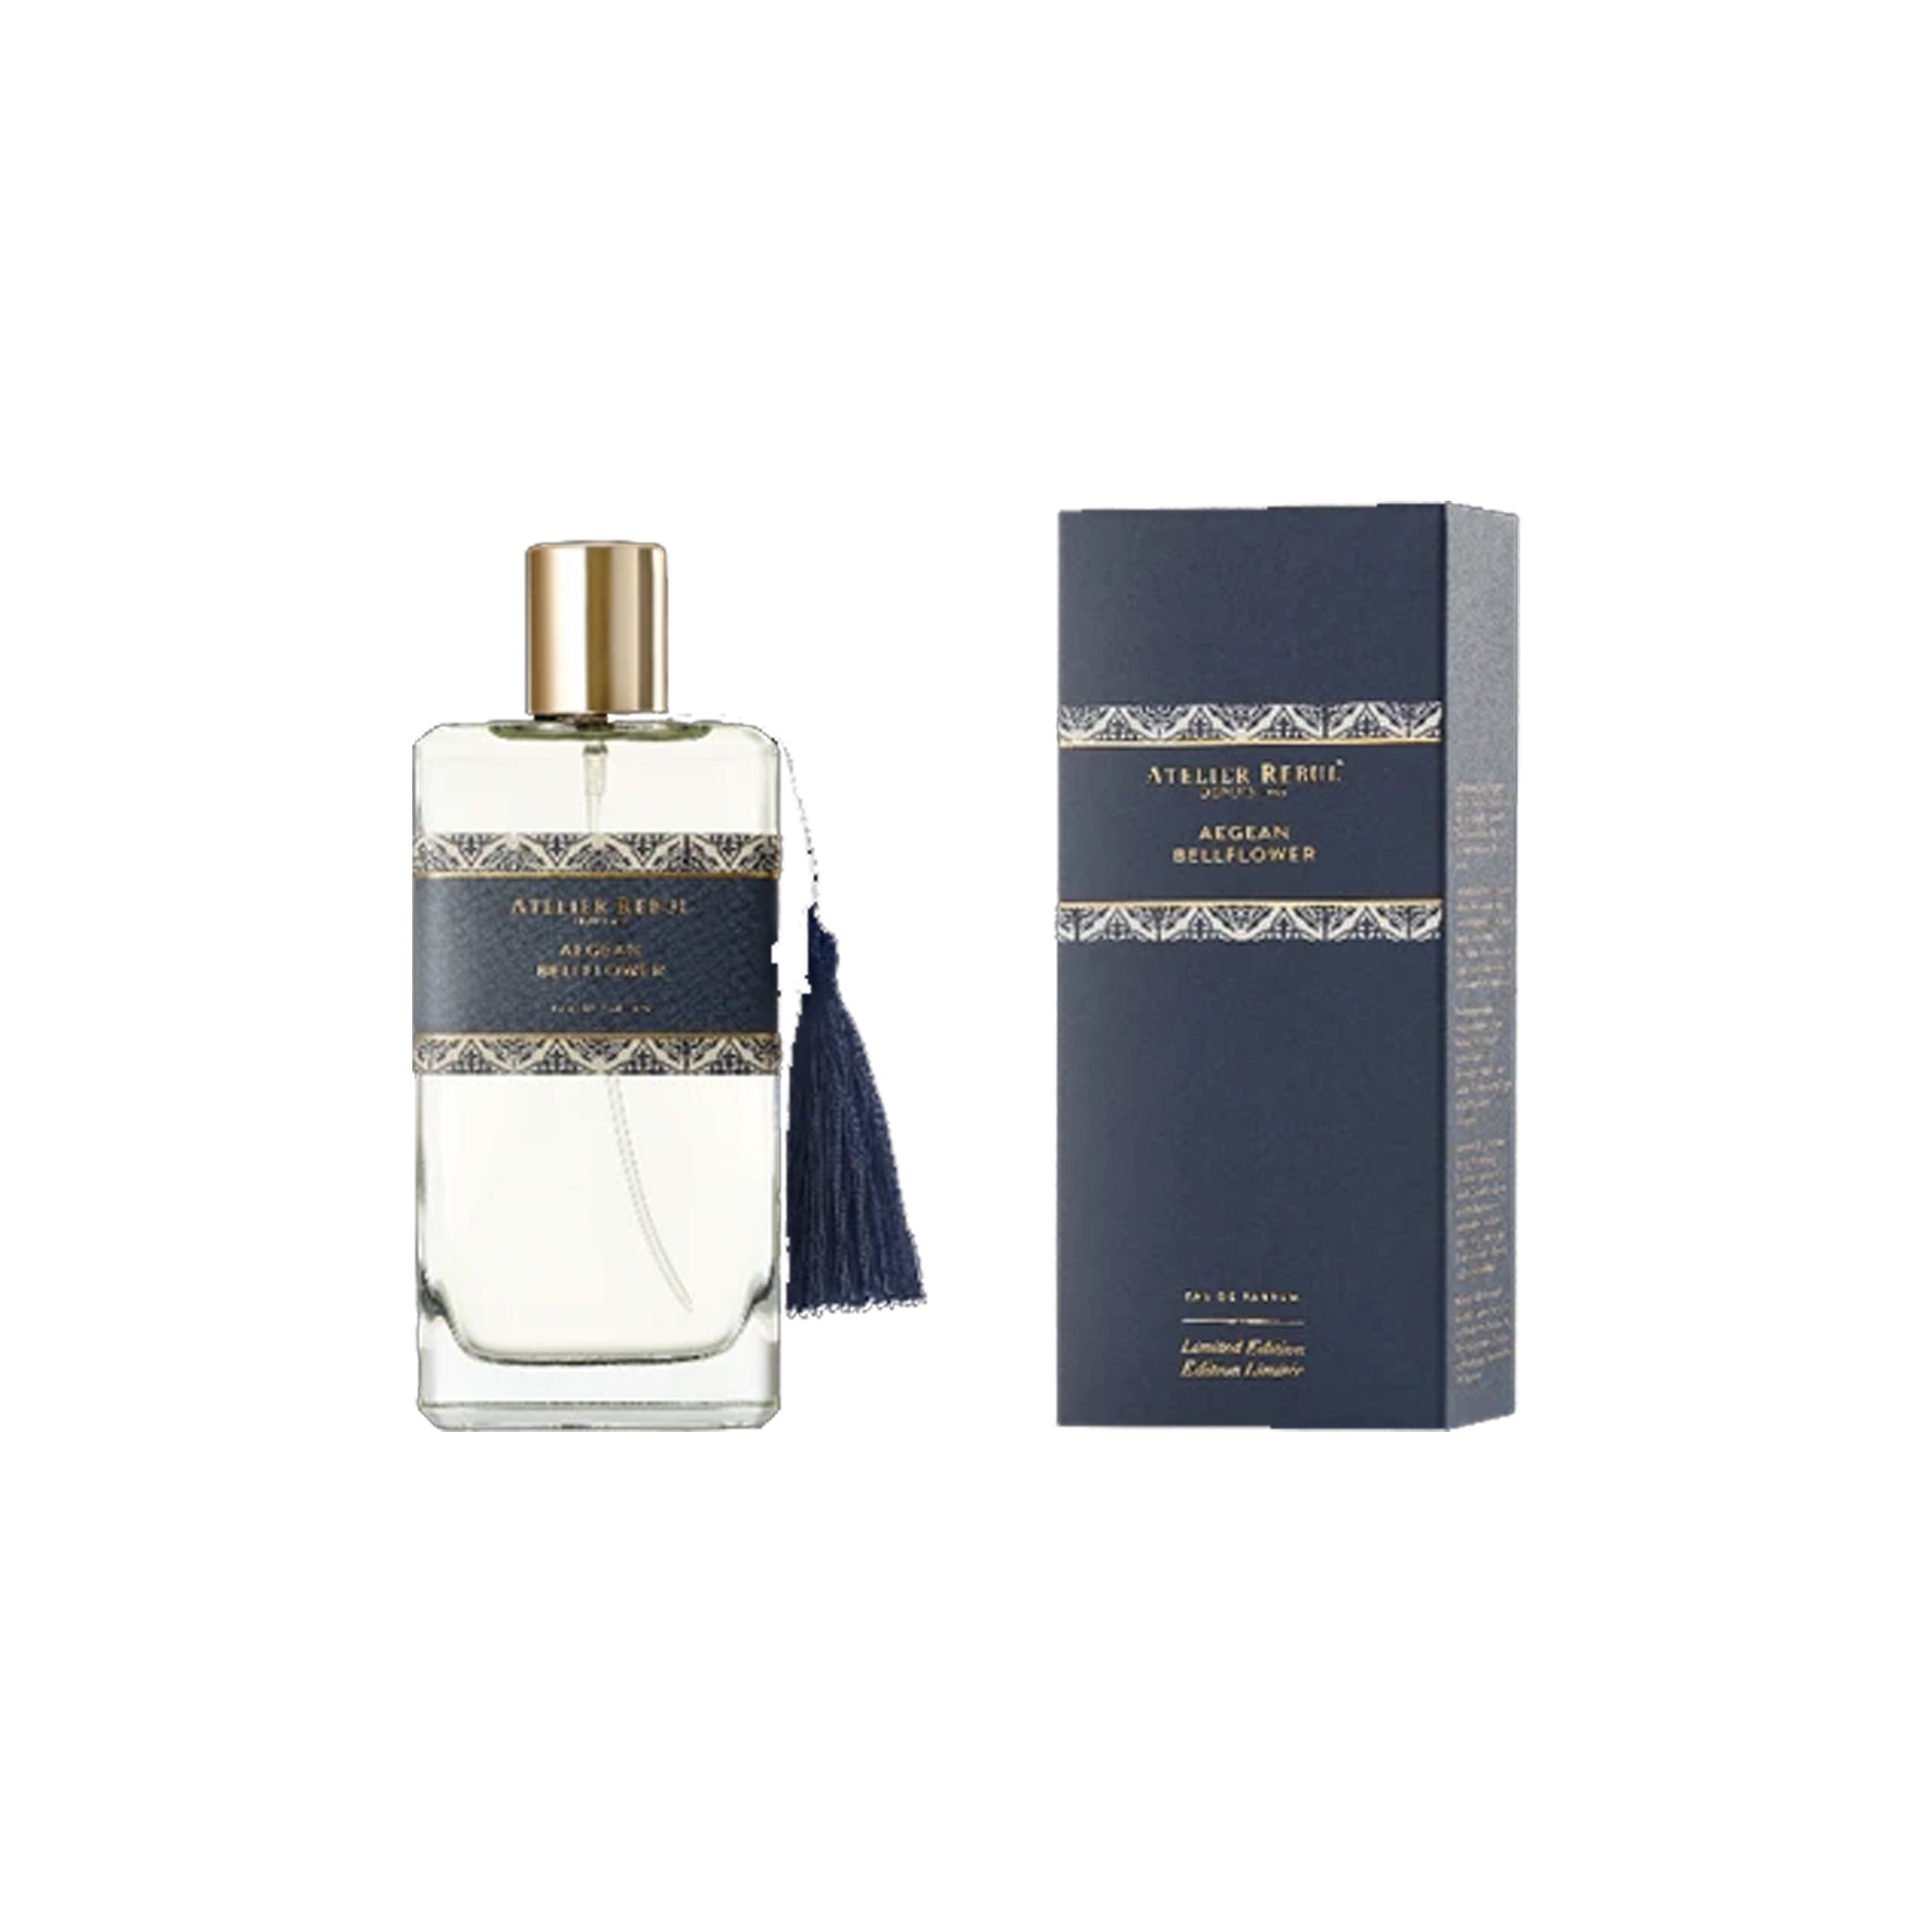 Aegean Bellflower Eau de Parfum 100ml for Women | Atelier Rebul Webshop